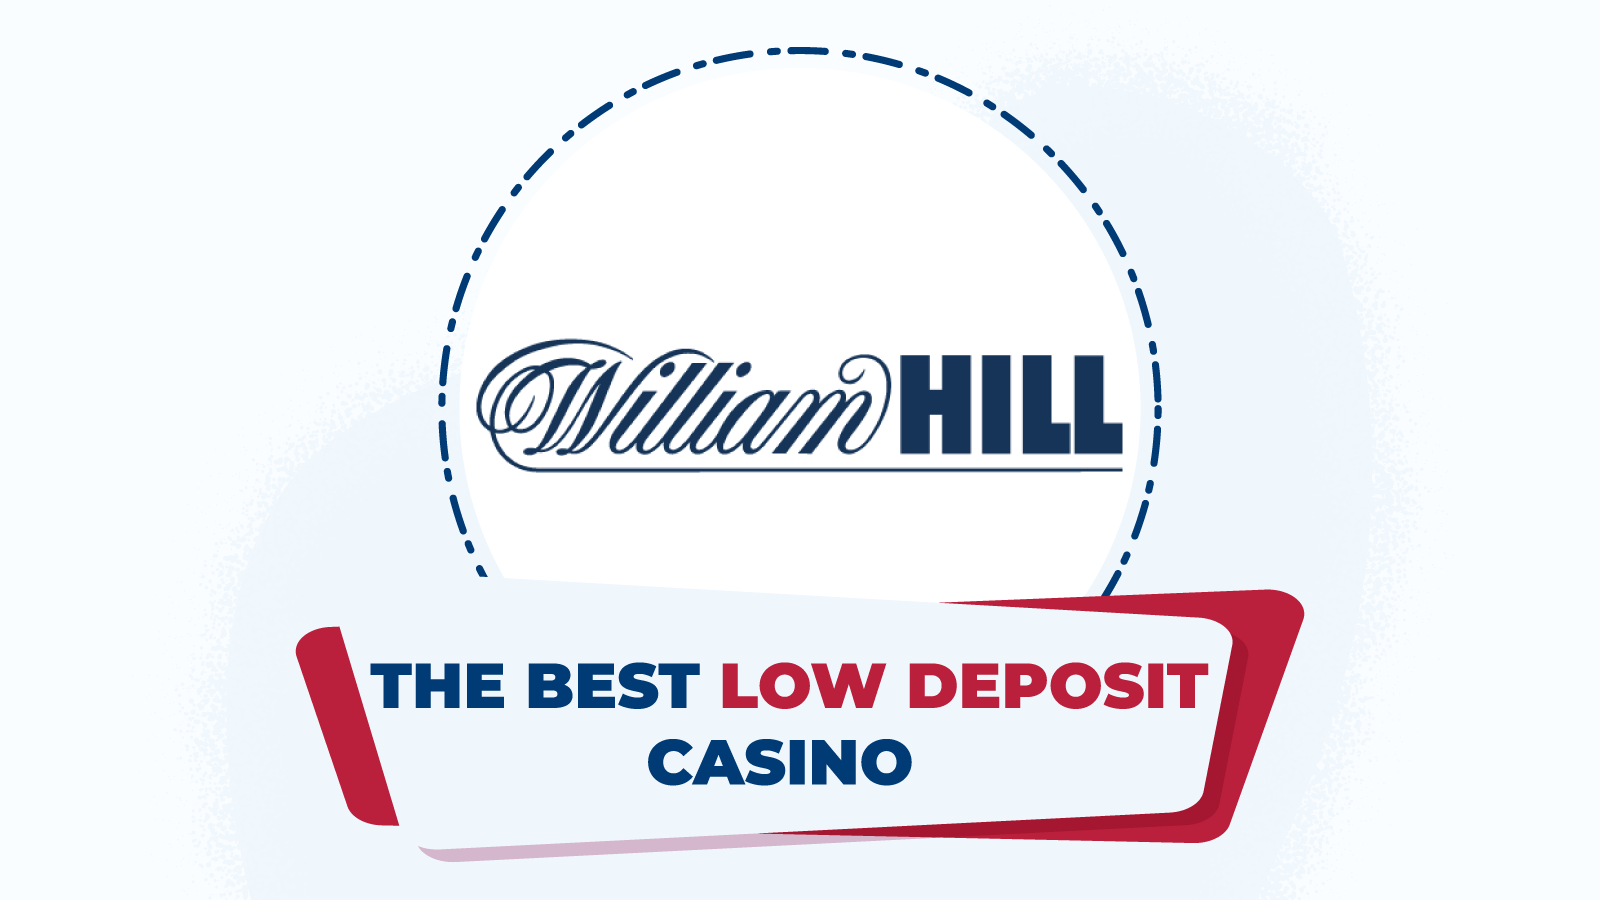 The best low deposit casino – William Hill Casino